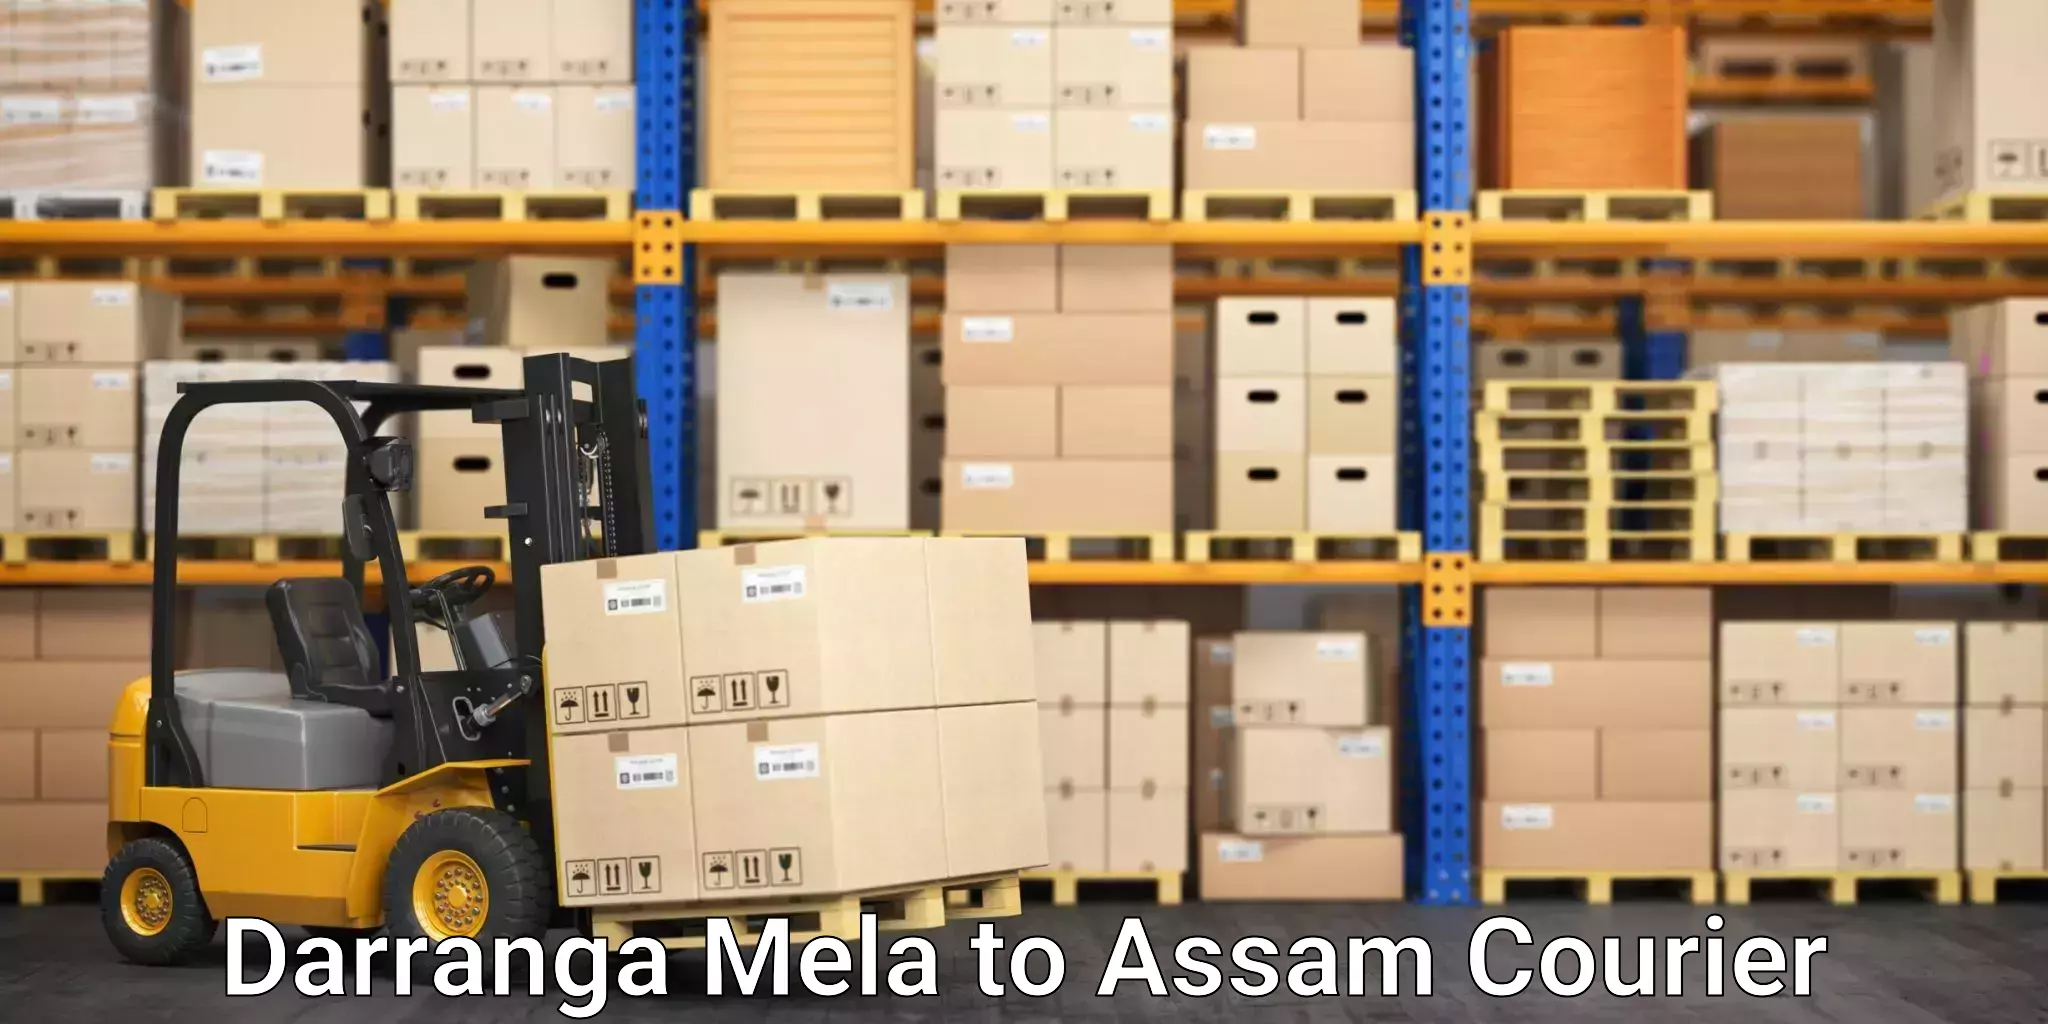 International courier rates Darranga Mela to Assam